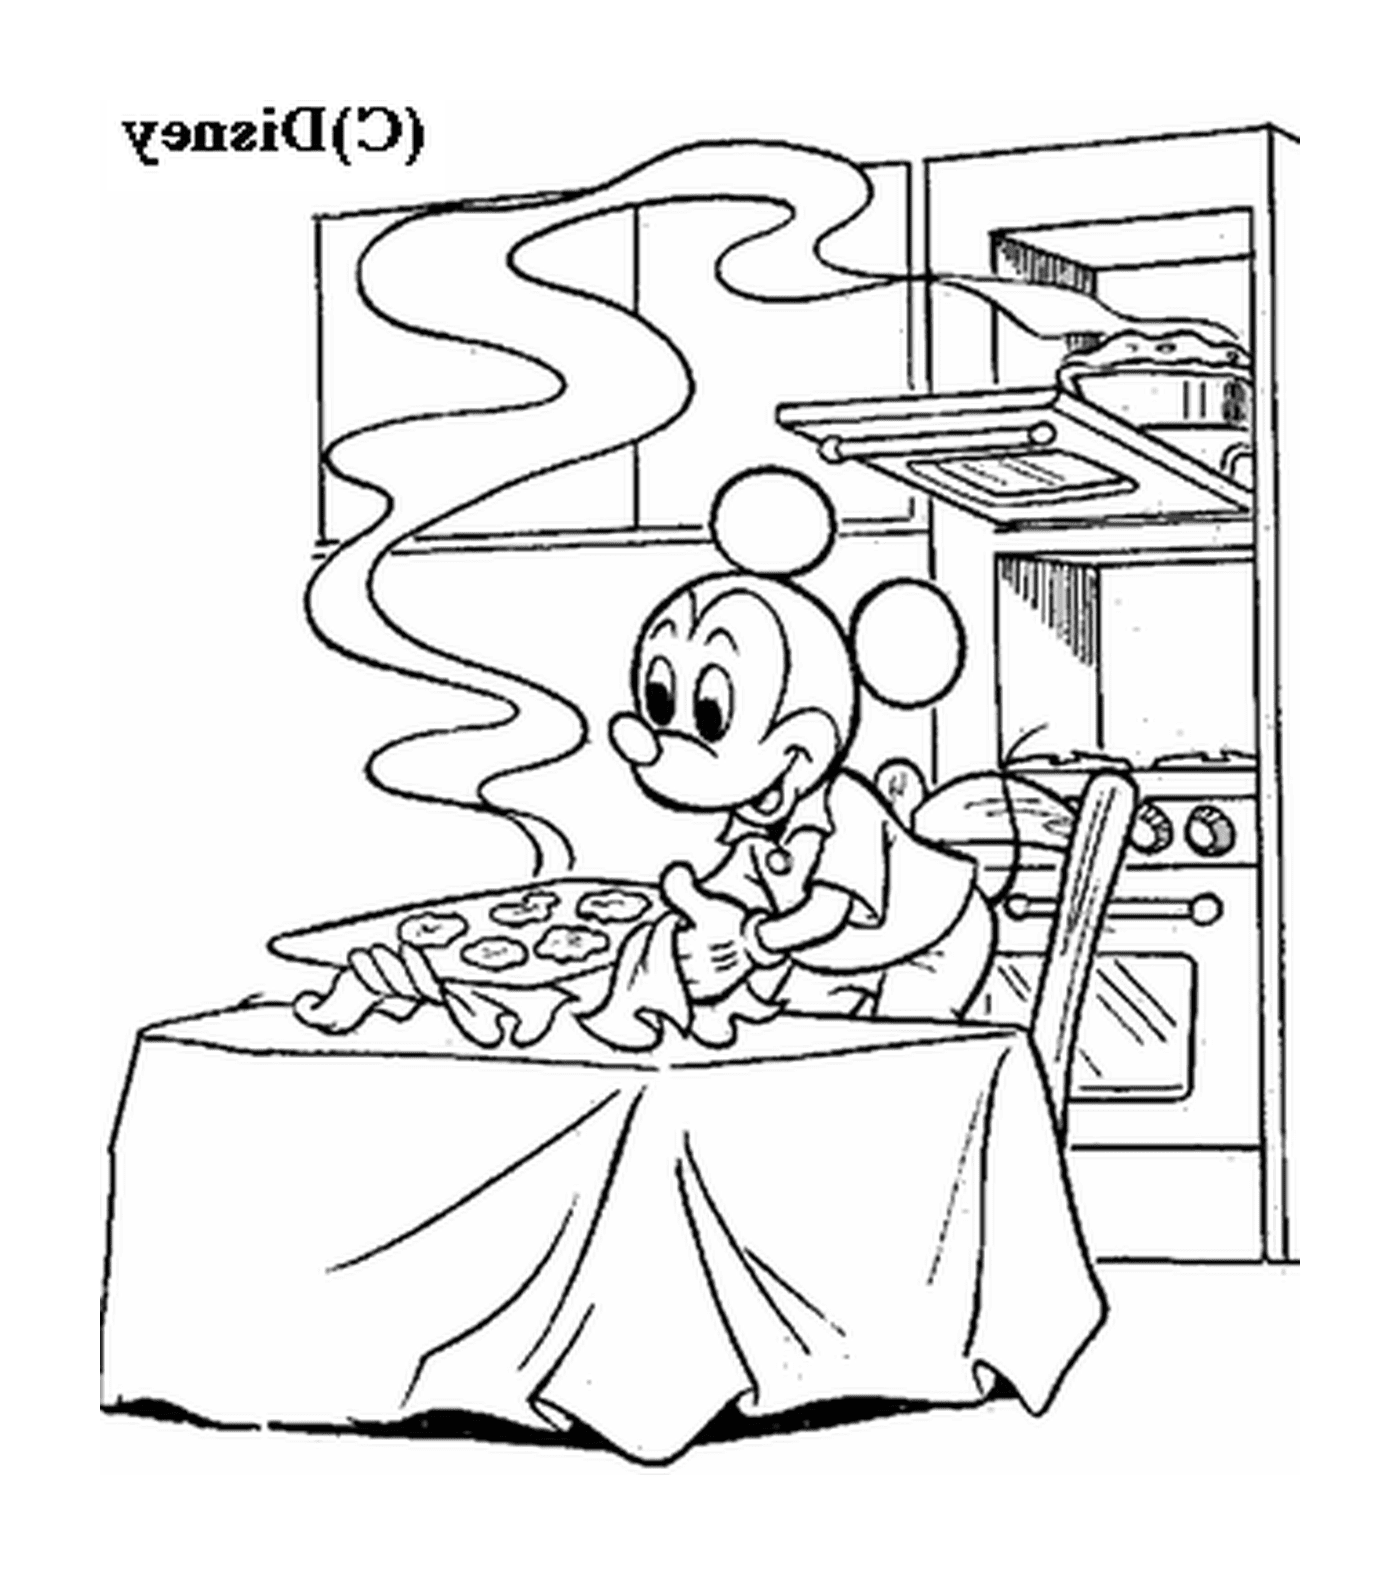  Mickey hace galletas: un ratón sentado en una mesa delante de una estufa 